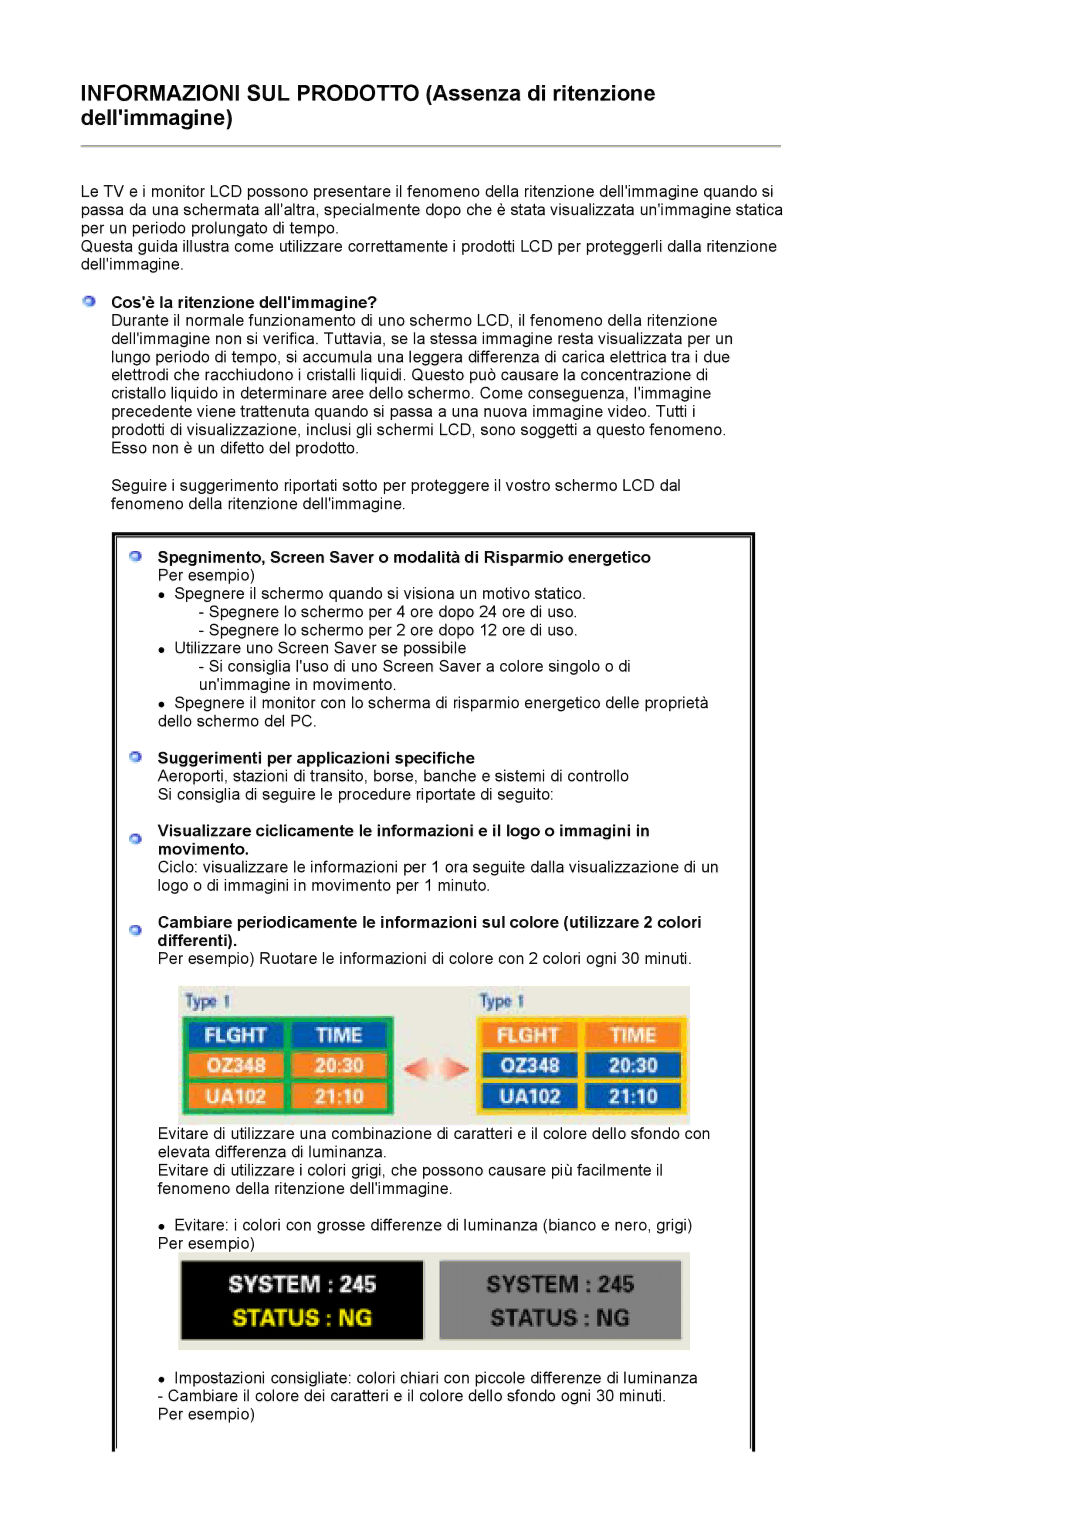 Samsung MJ17CSKS/EDC manual Cosè la ritenzione dellimmagine?, Suggerimenti per applicazioni specifiche 